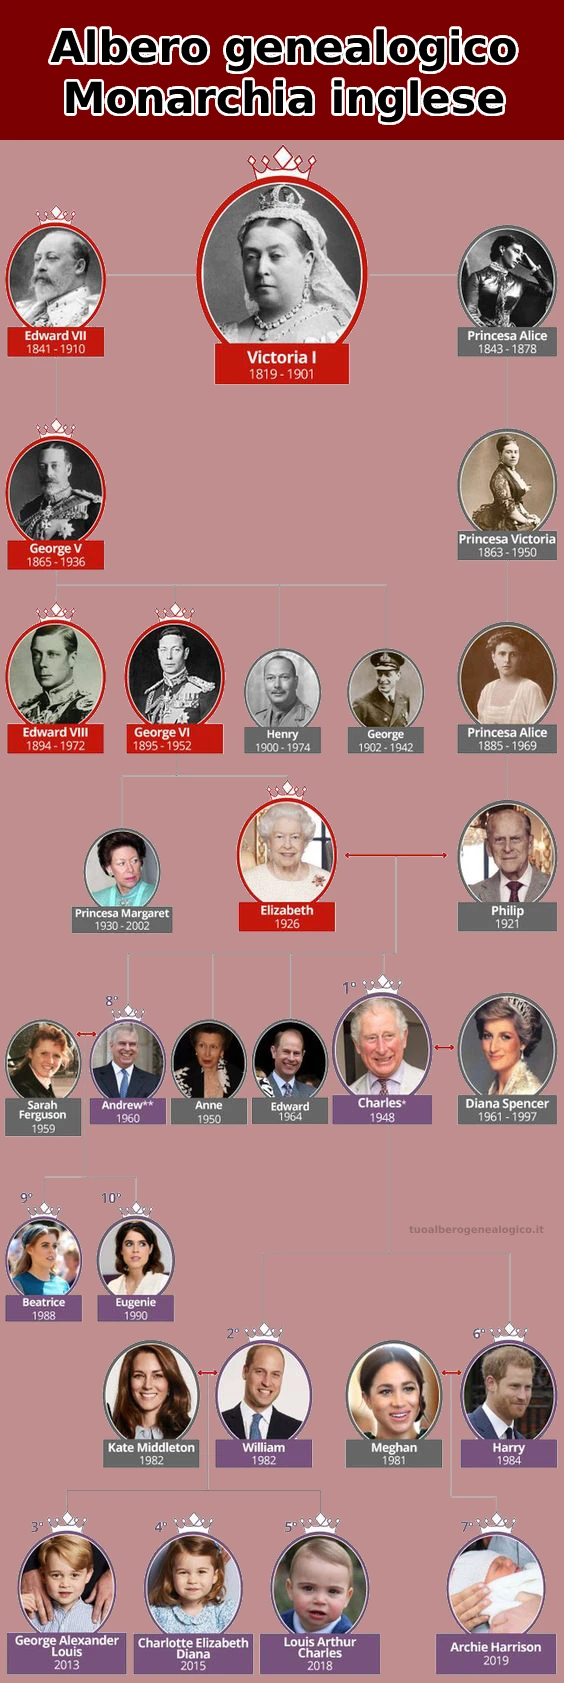 albero genealogico della monarchia inglese